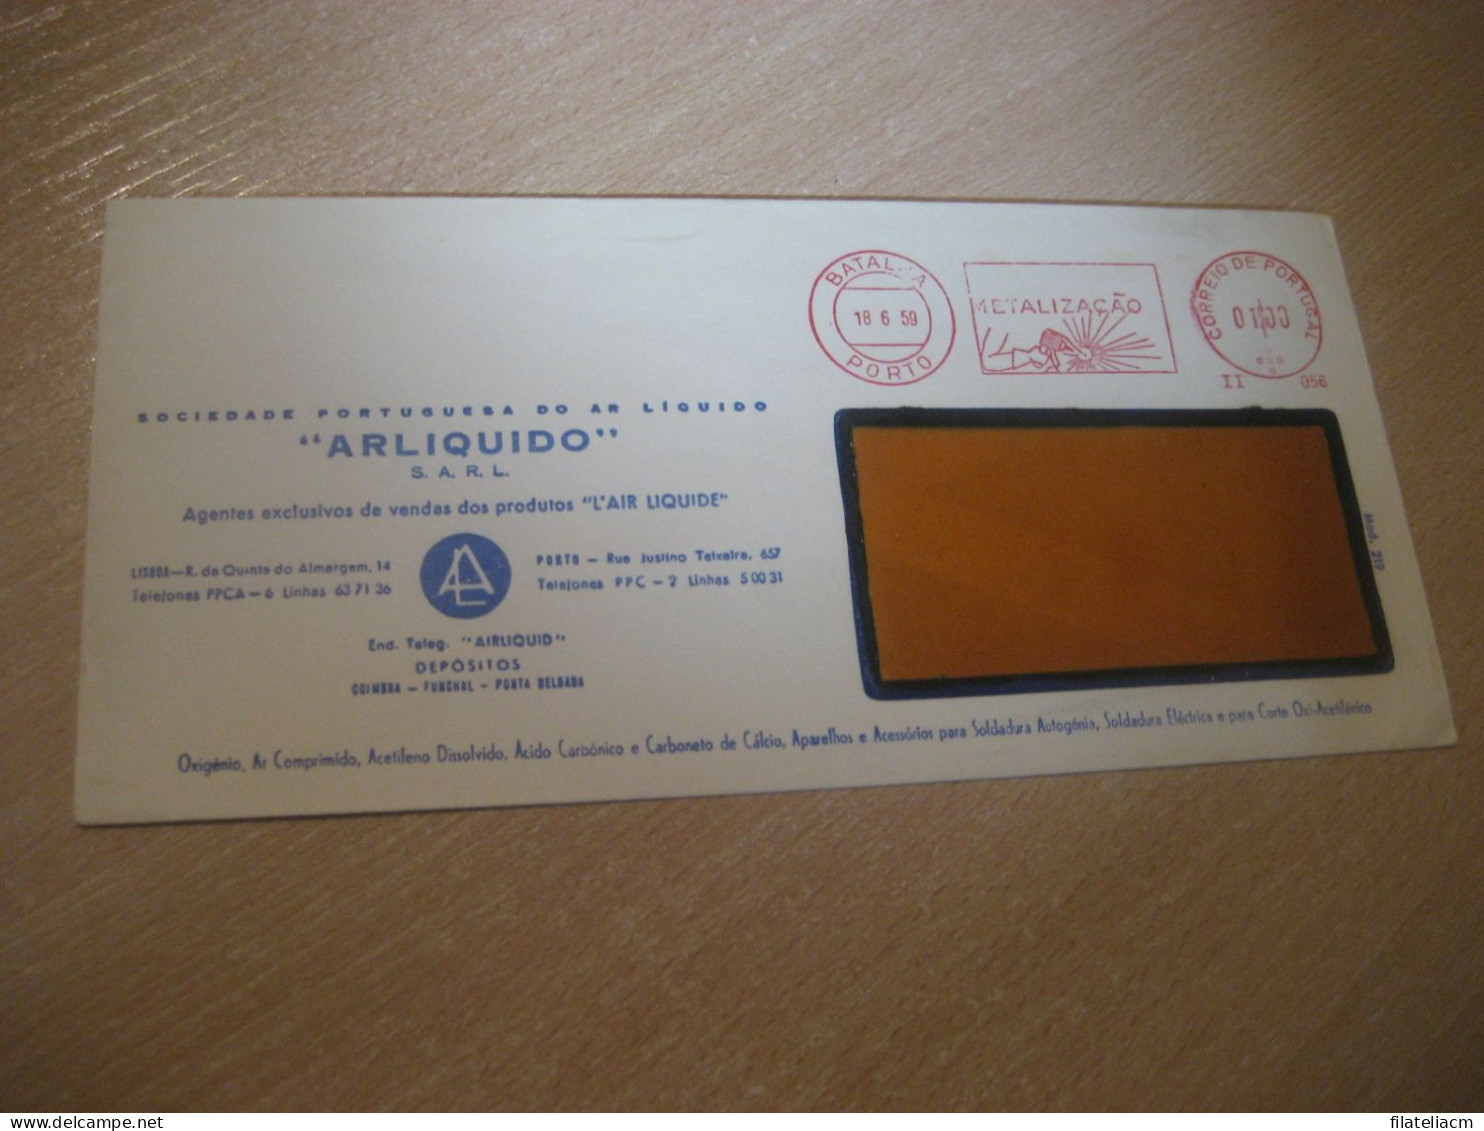 PORTO 1959 Metalizaçao Arliquido Chemical Physics Meter Mail Cancel Cover PORTUGAL - Briefe U. Dokumente